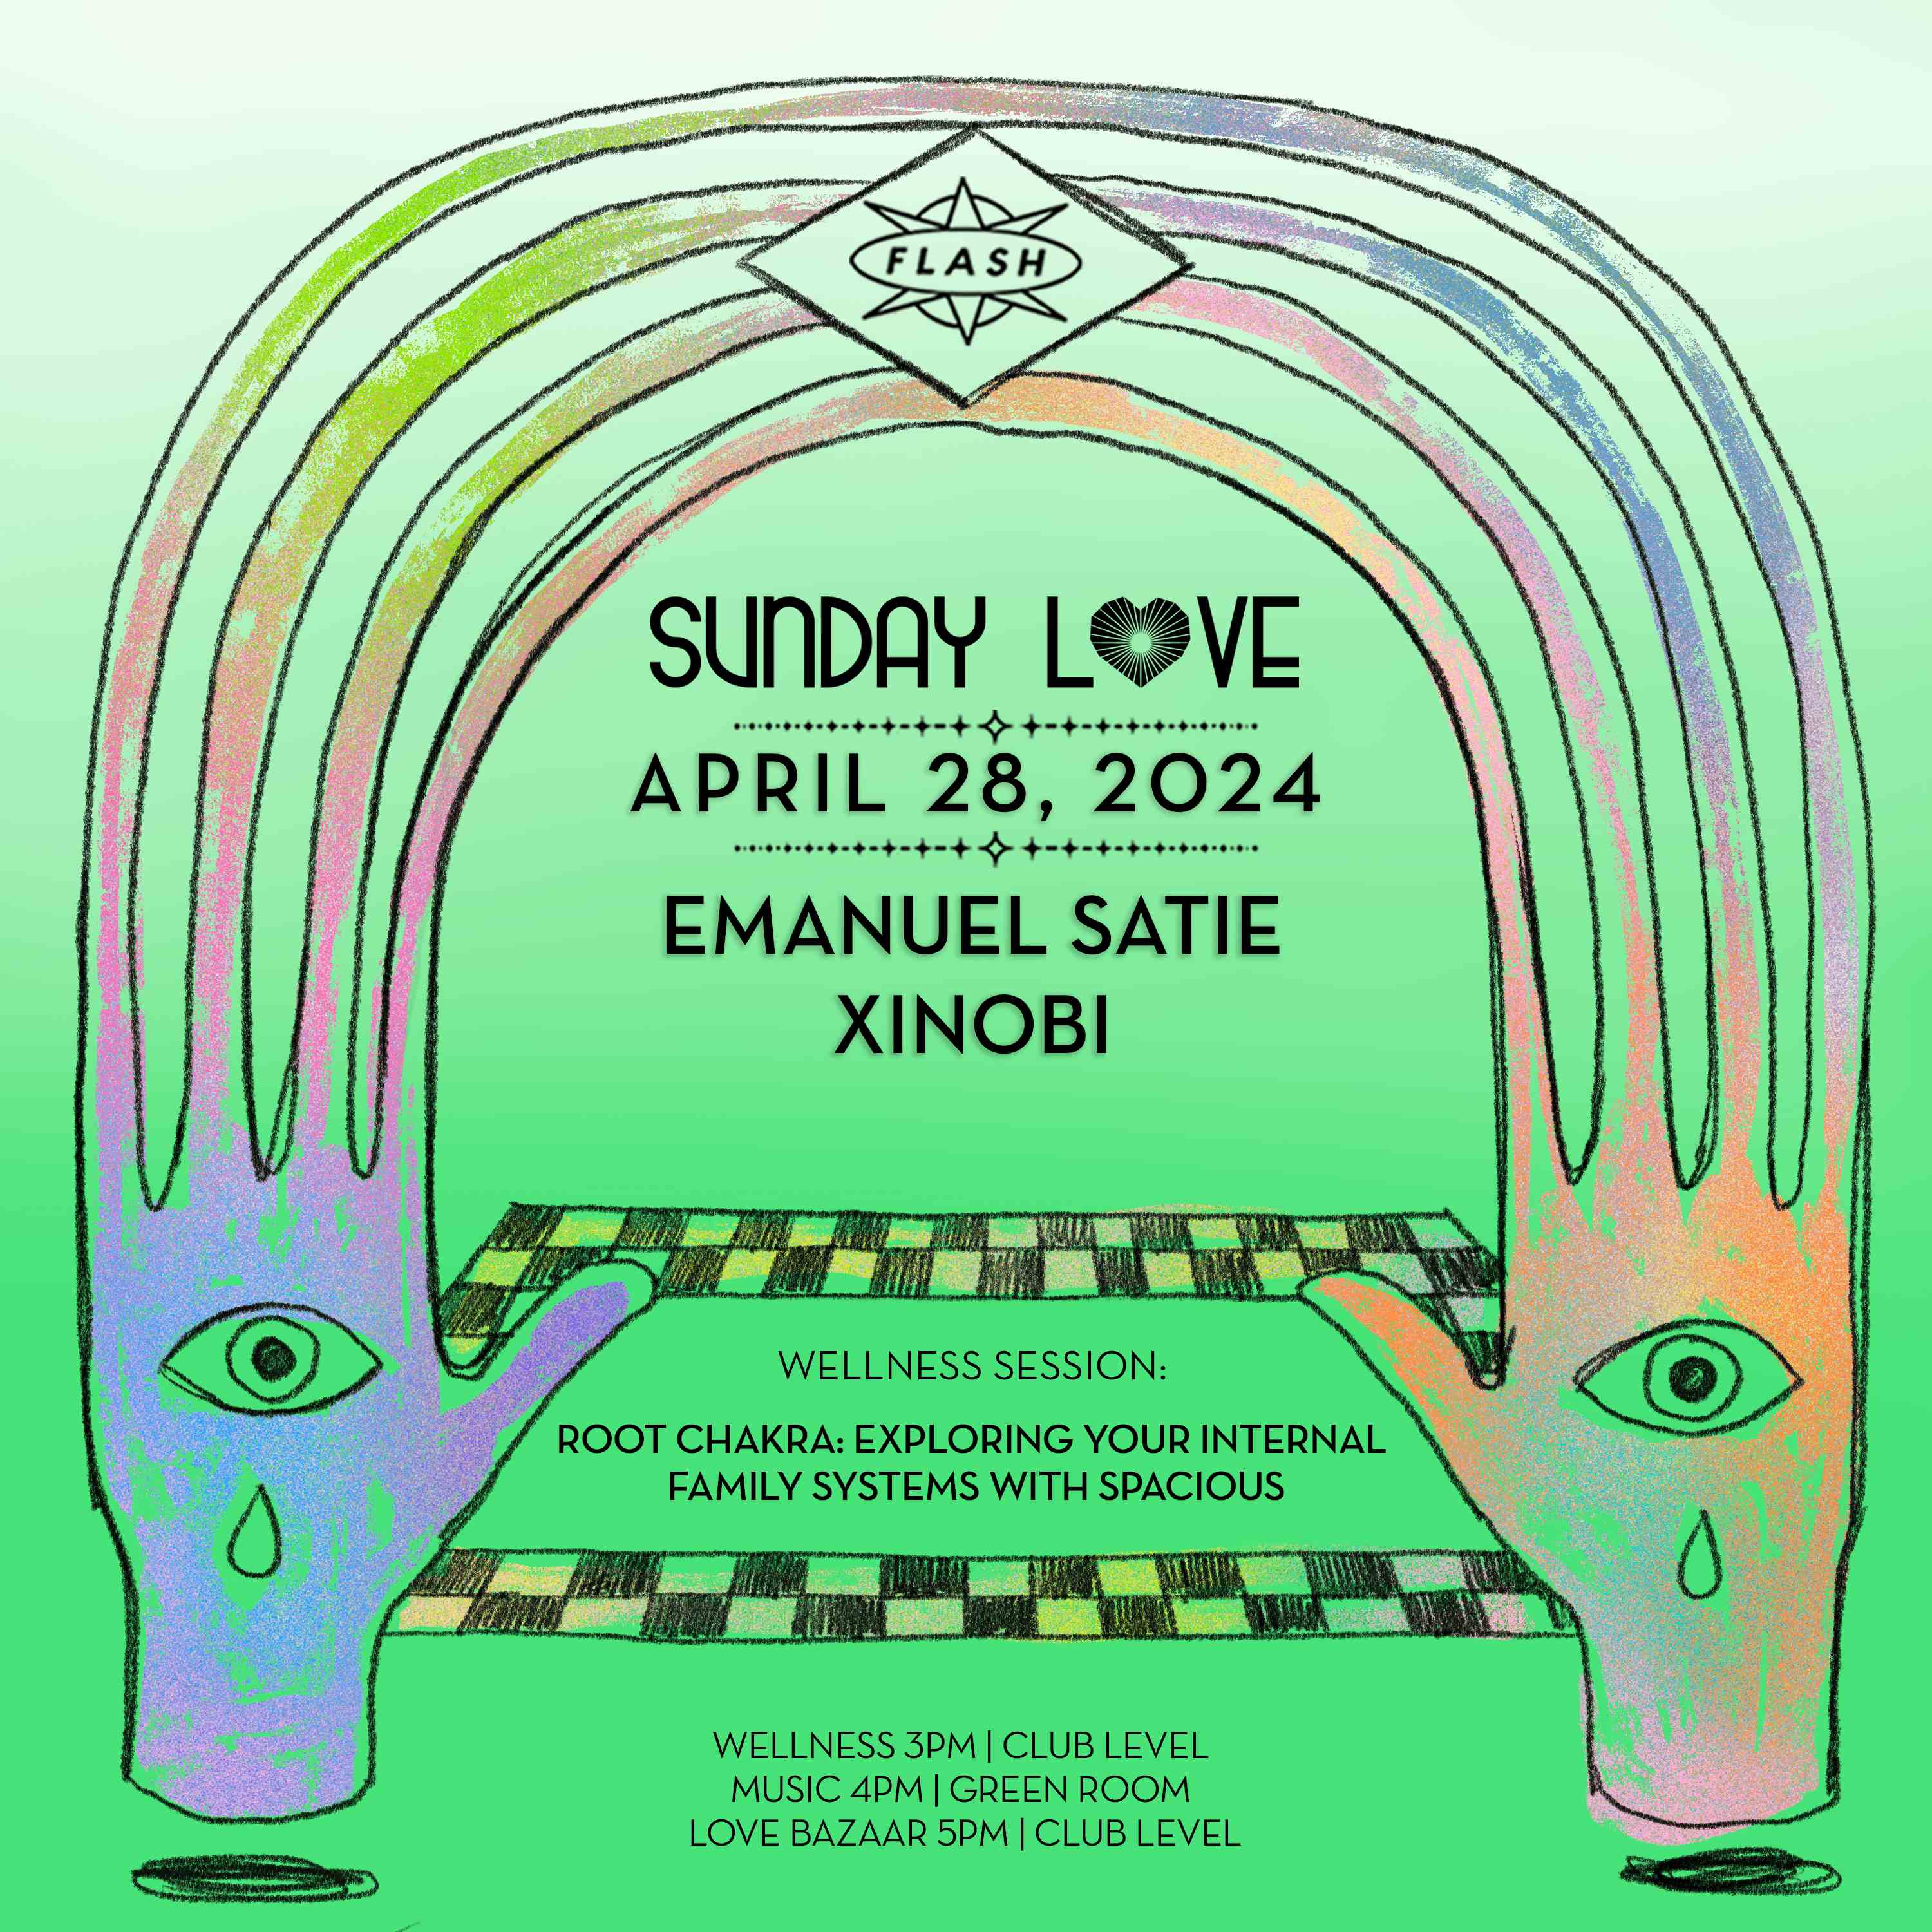 Sunday Love: Emanuel Satie - Xinobi event flyer